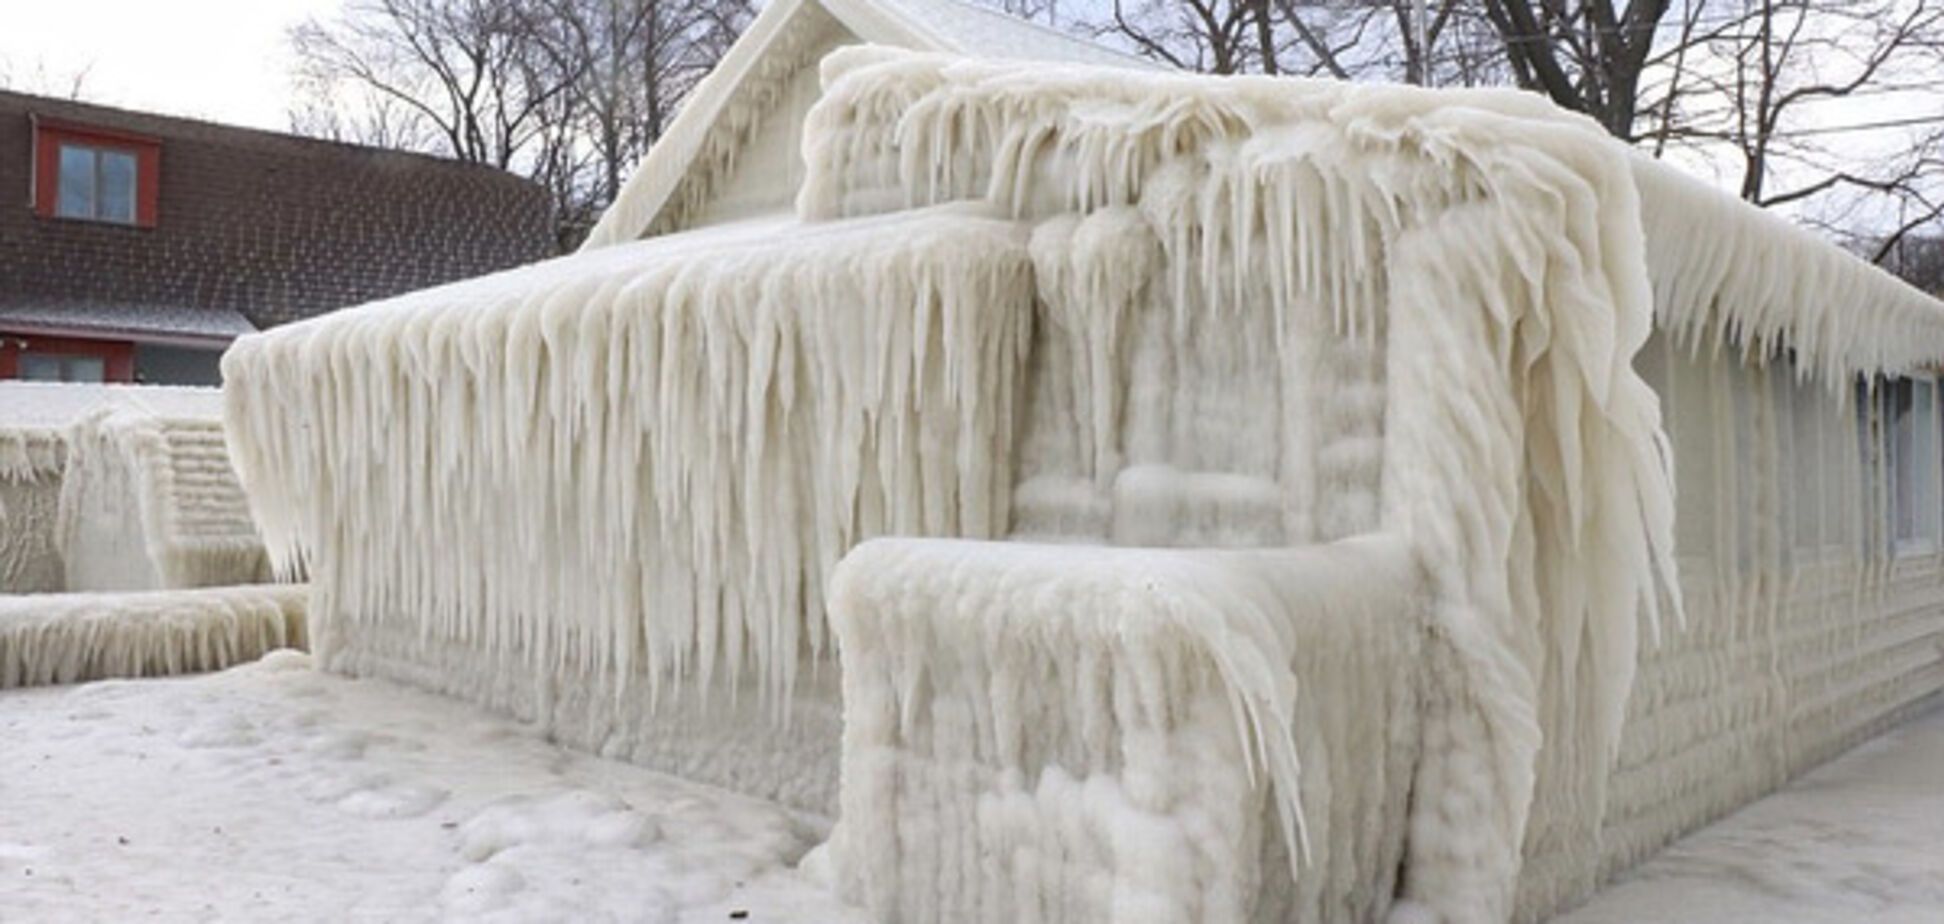 Дом, покрытый льдом